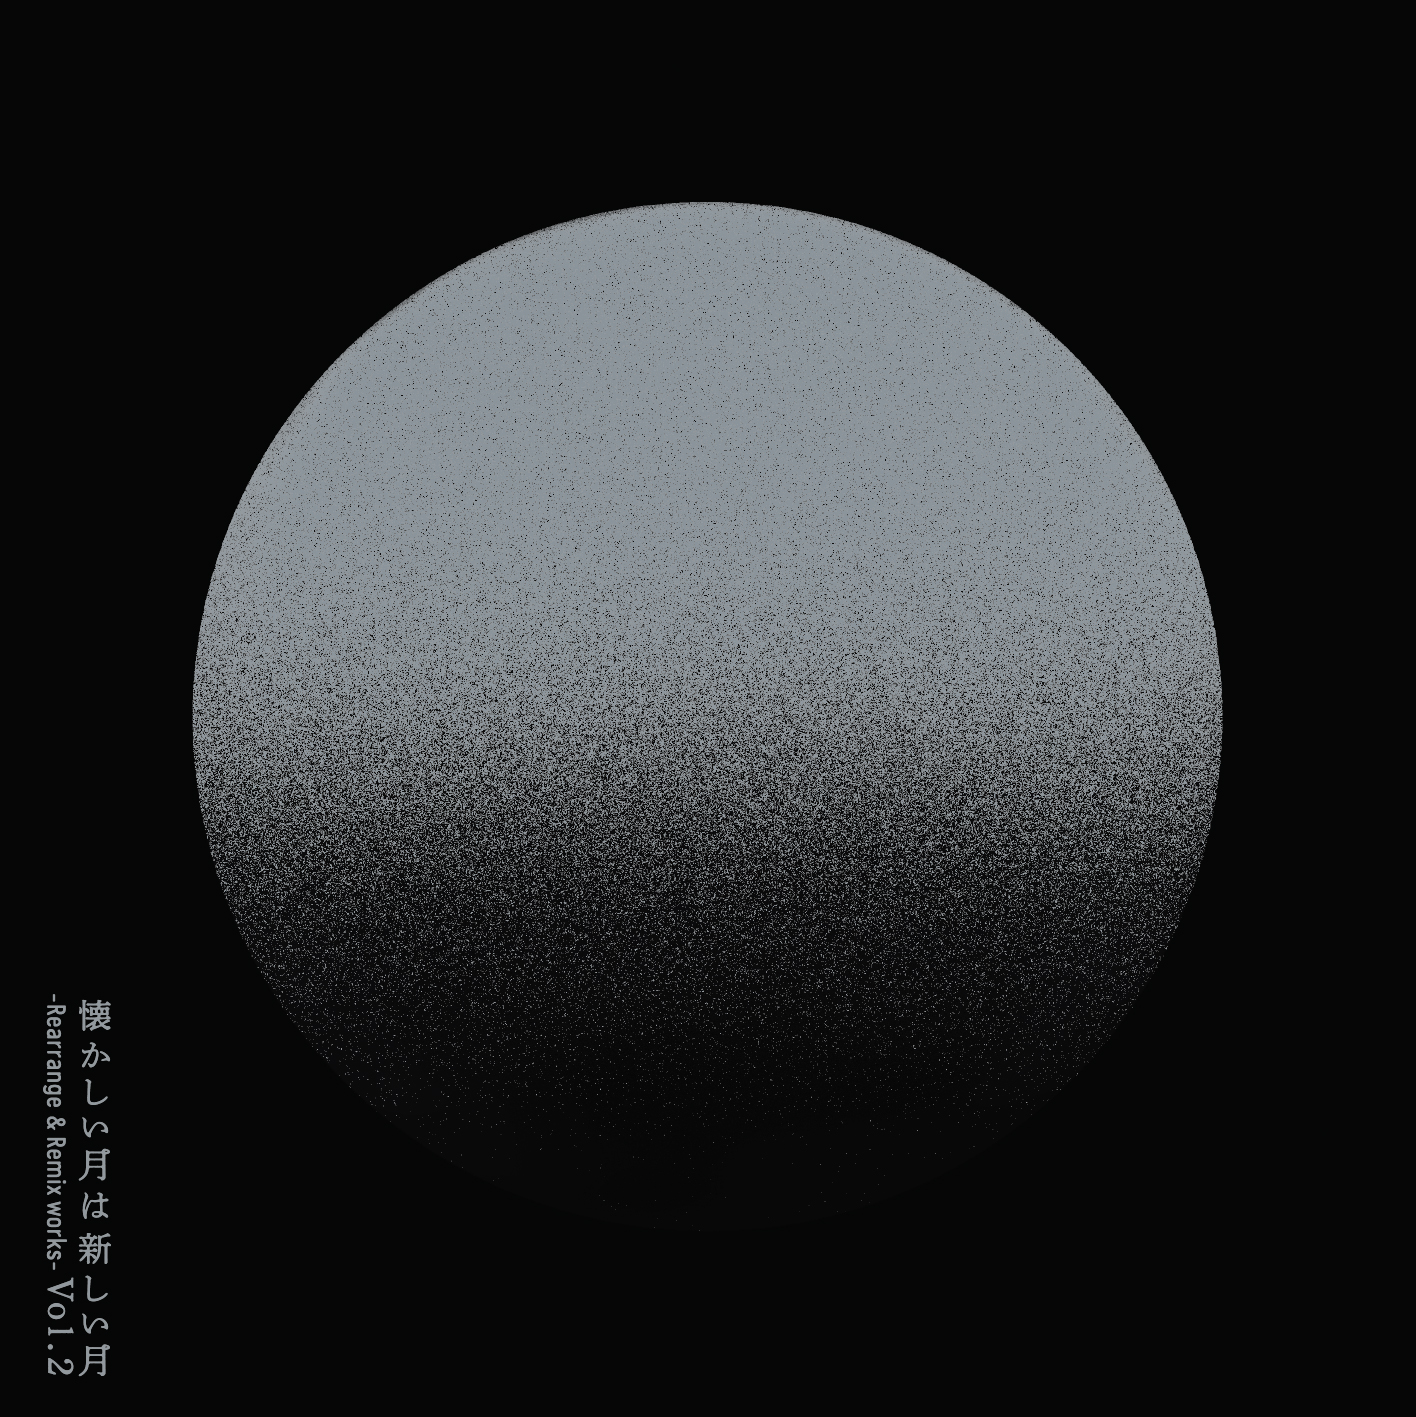 『懐かしい月は新しい月 Vol. 2 ~Rearrange & Remix works~』通常盤ジャケット